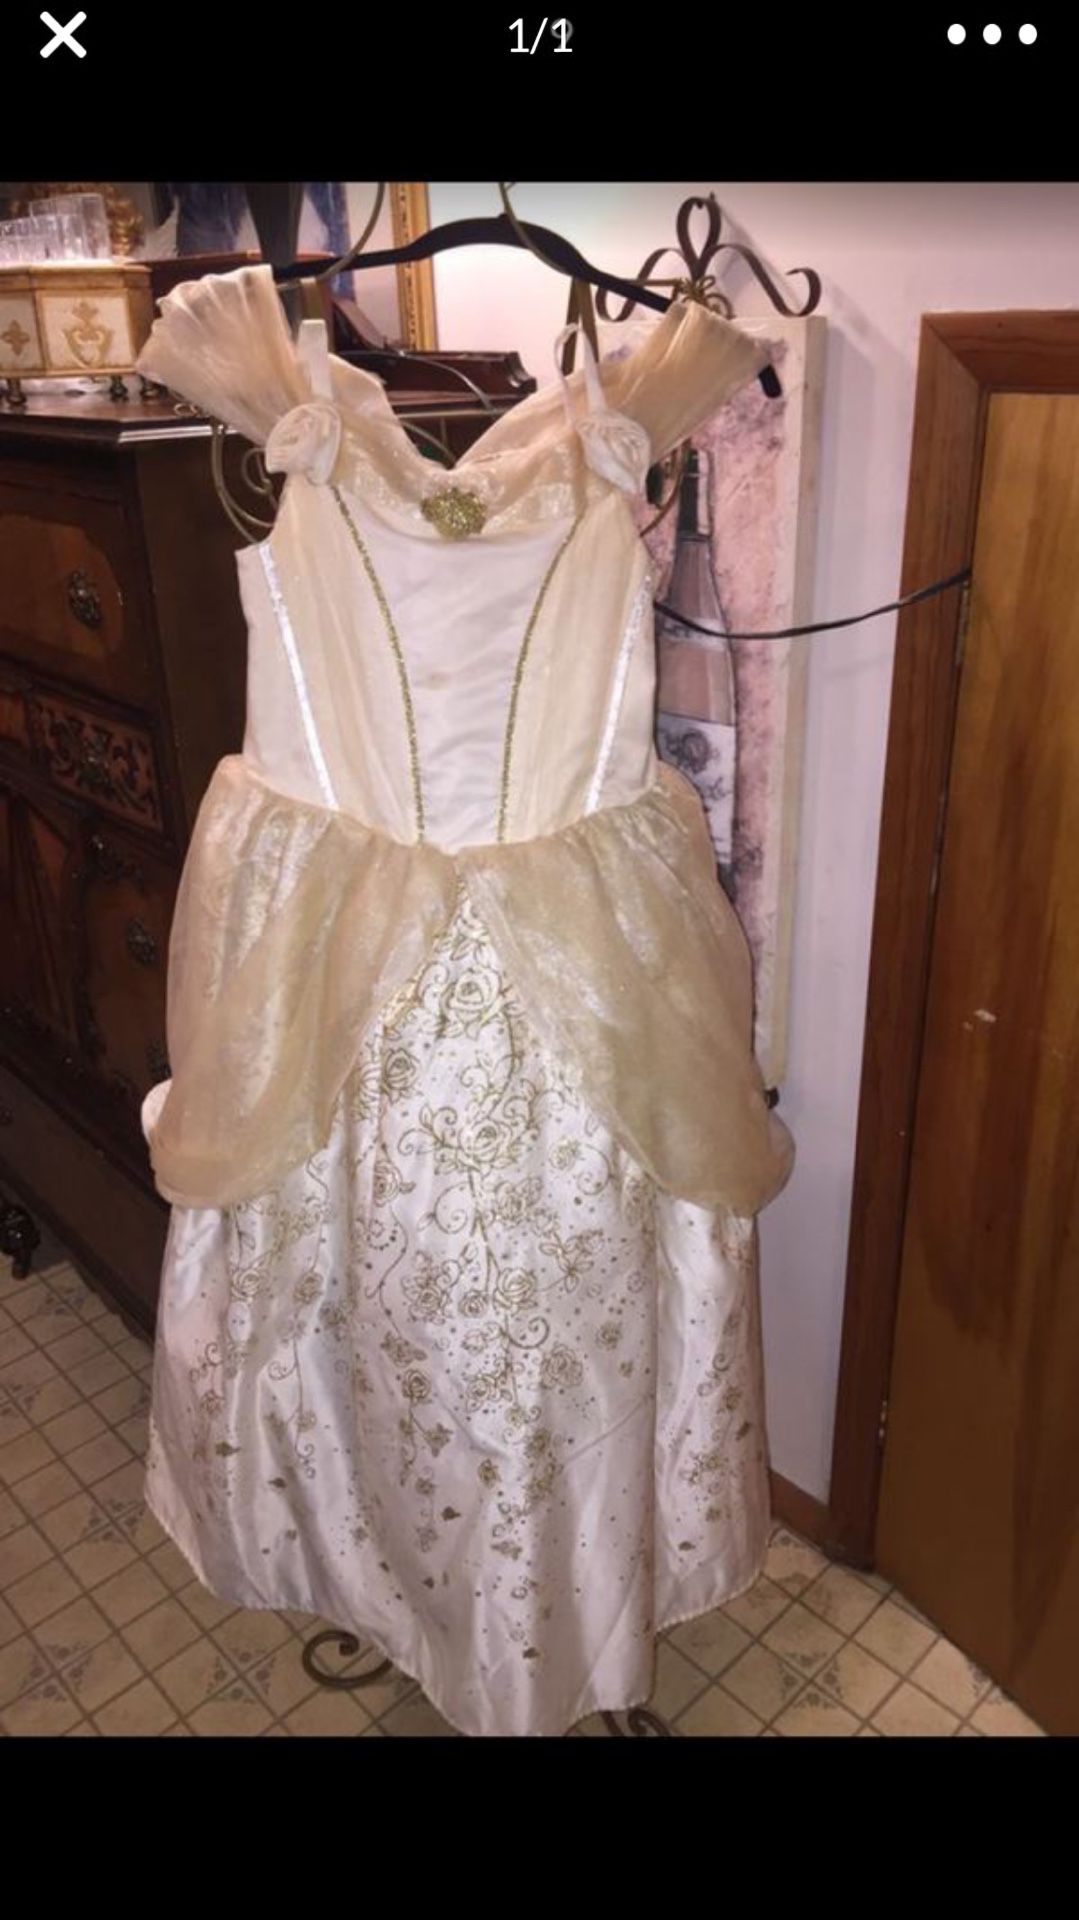 Little girls Princess dress from Disney store Euc beautifulHalloween “ costume” szxl 10/12.